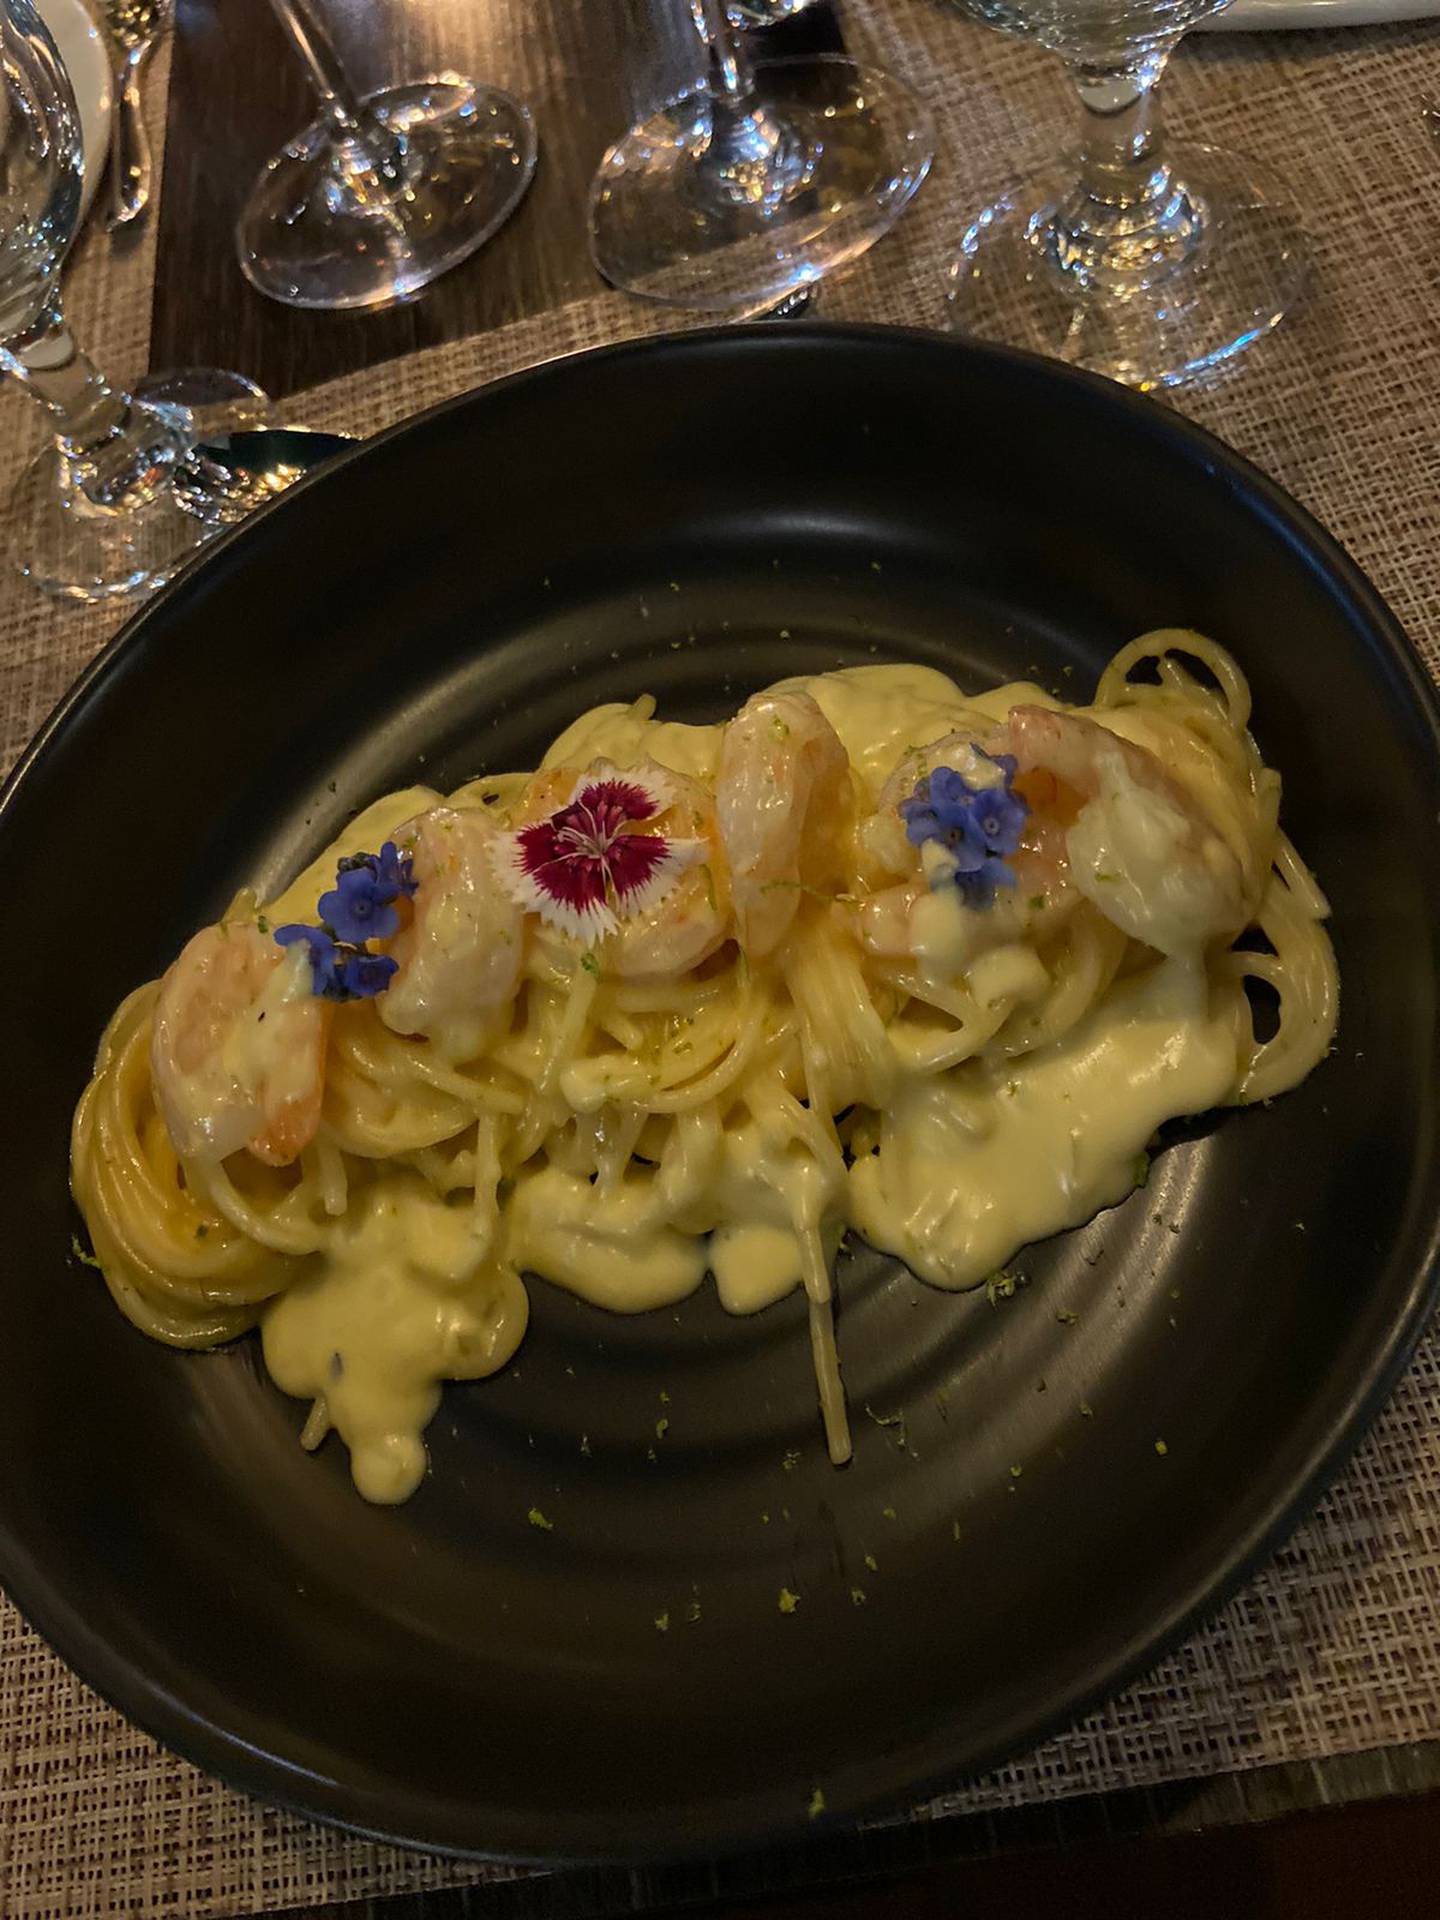 El restaurante Ágatha by Appunto abrió sus puertas la semana anterior y ofrece una mezcla de gastronomía euro asiática. Yenci Aguilar.